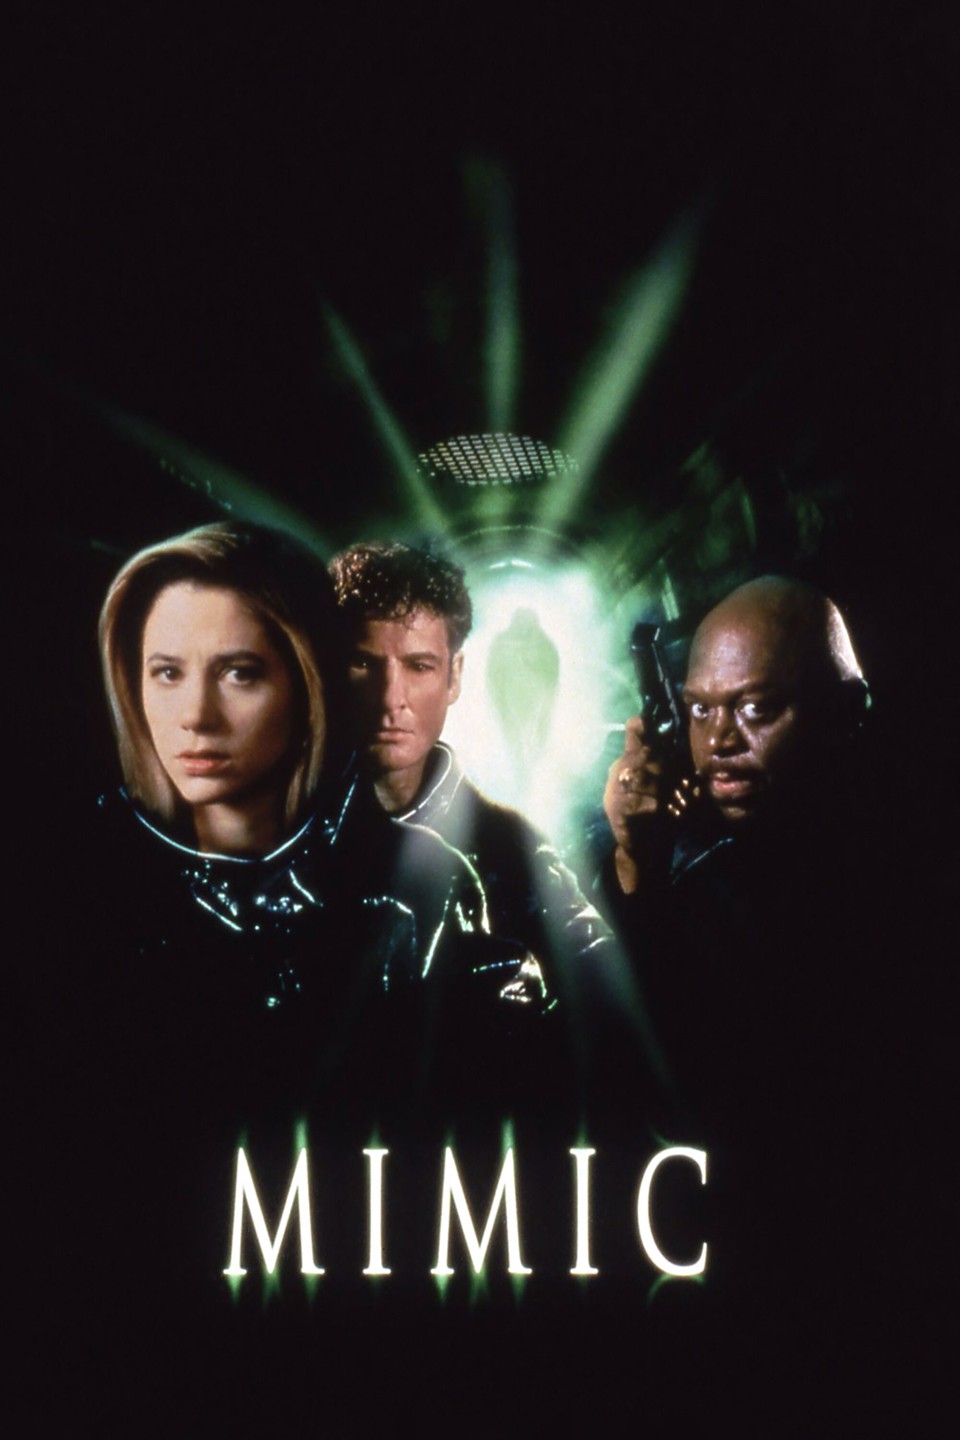 The Mimic filme - Veja onde assistir online